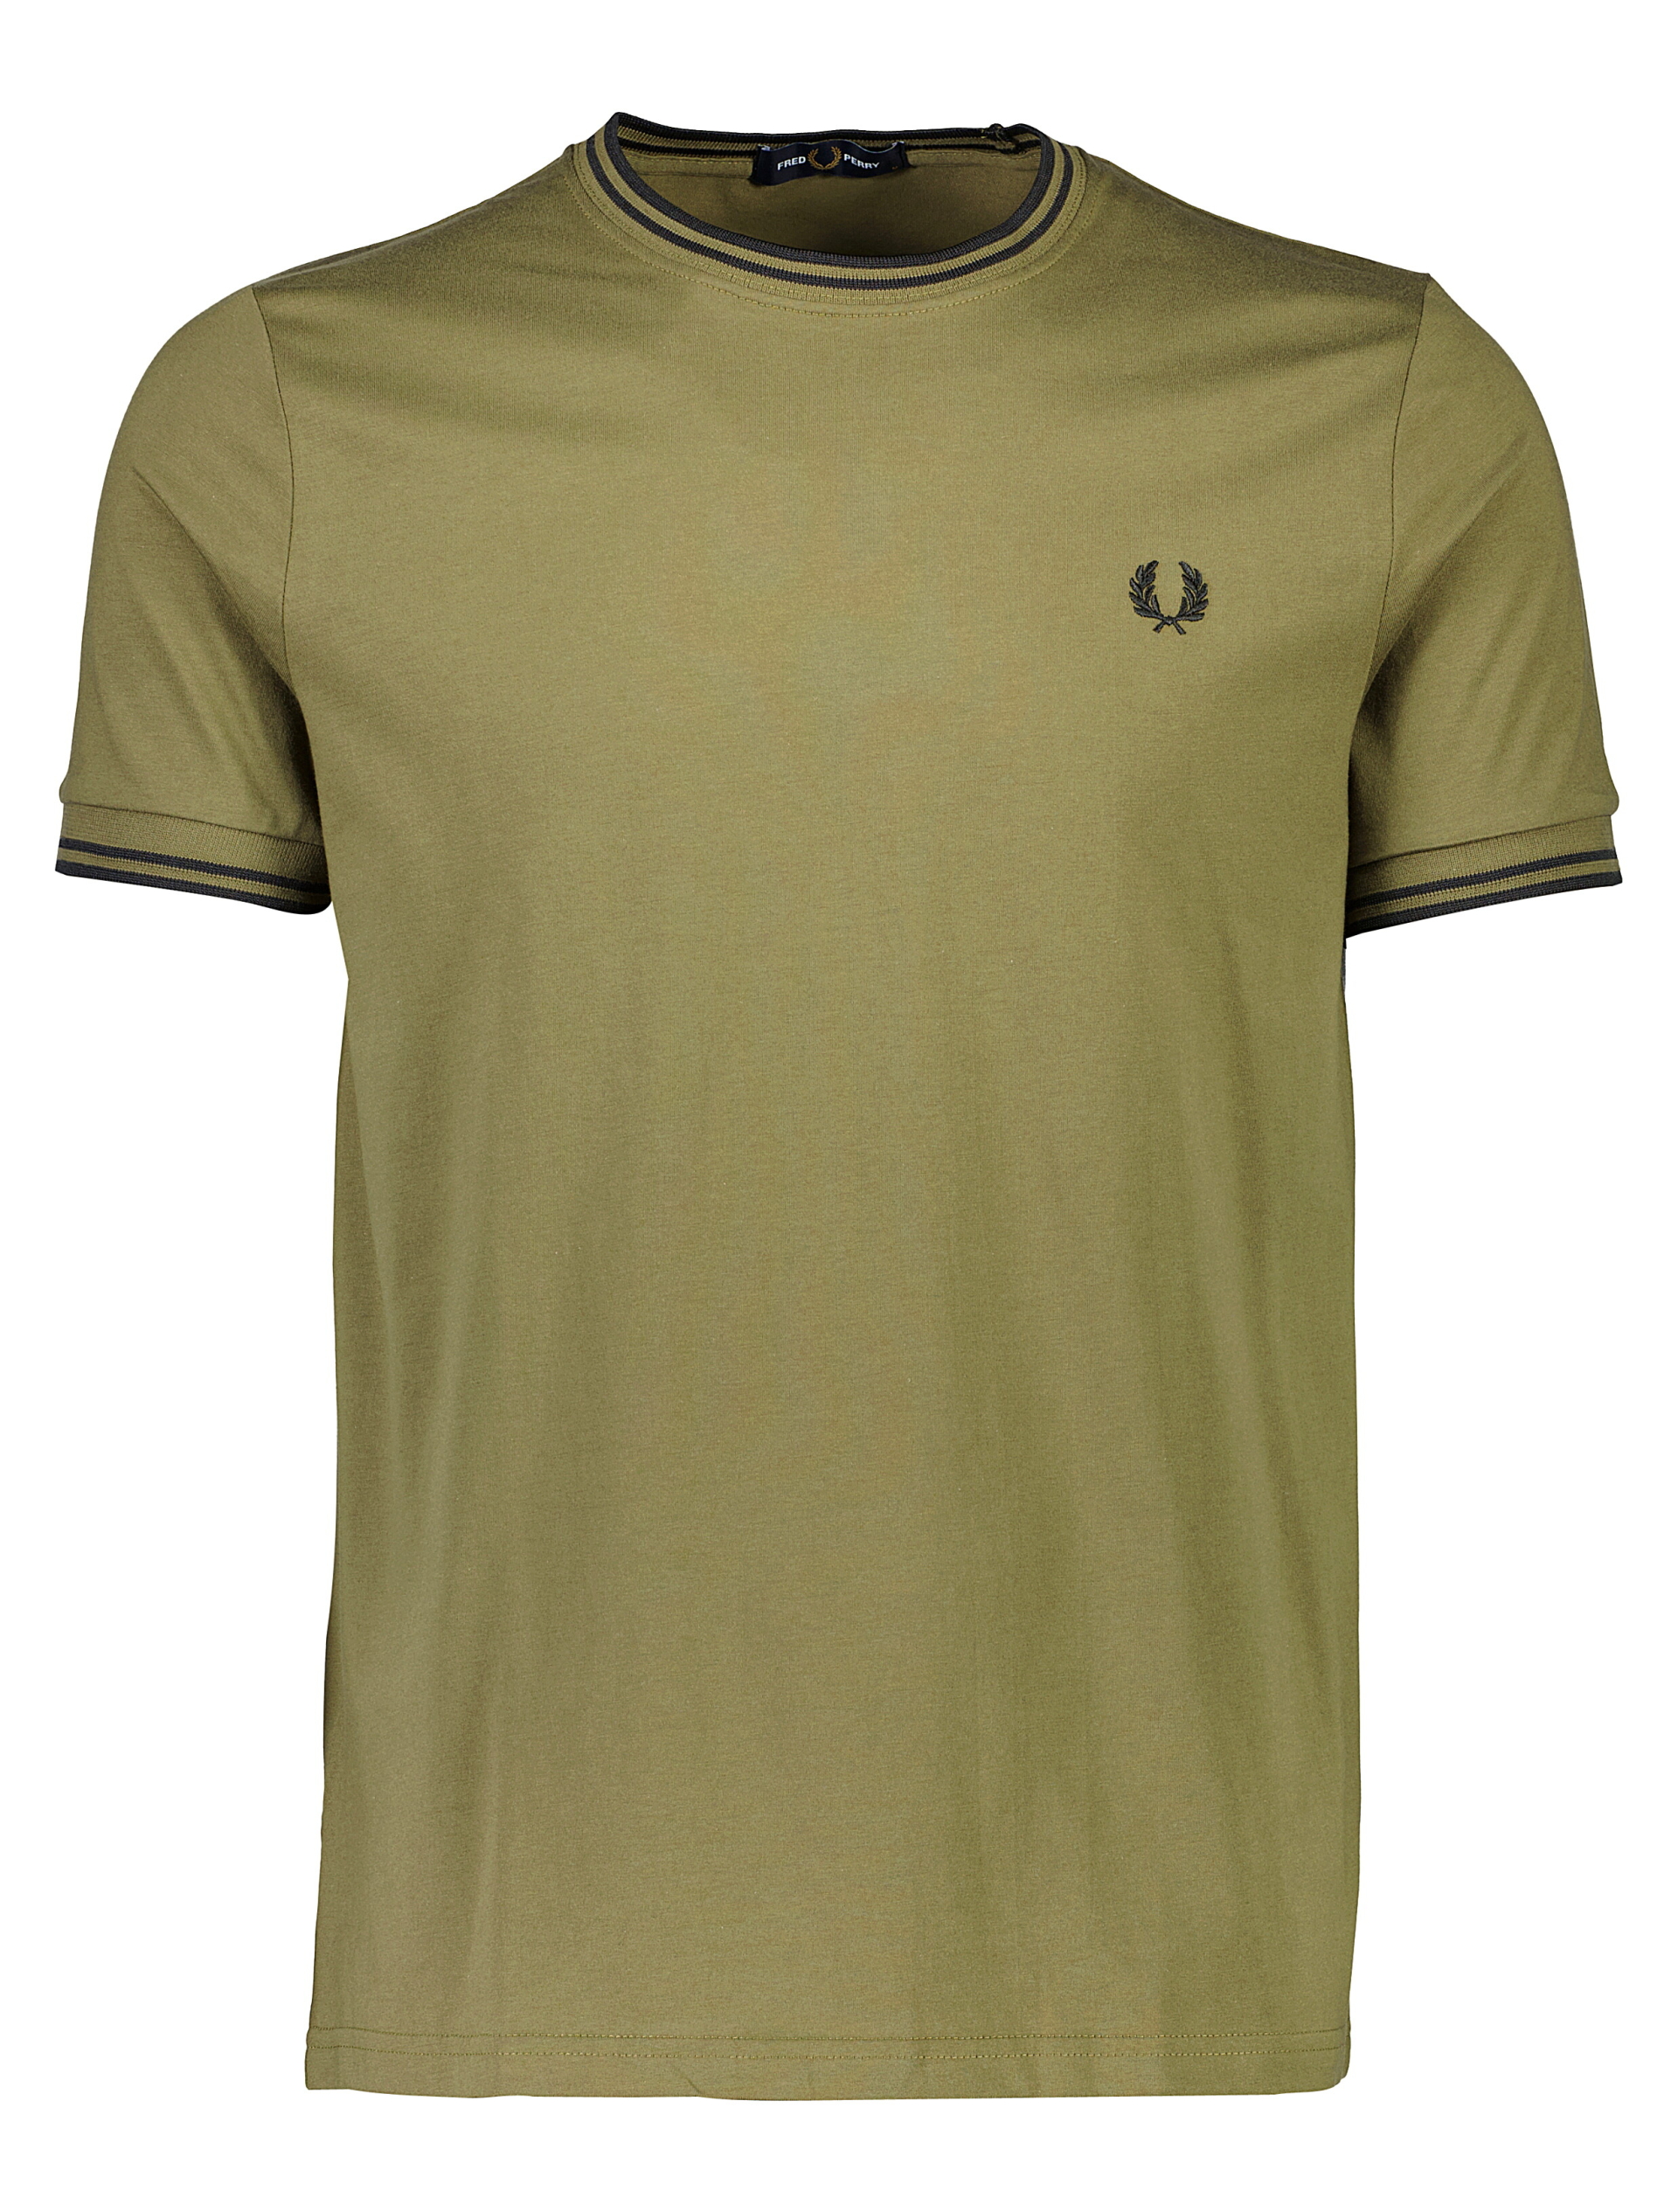 Fred Perry T-shirt grøn / q55 uniform green